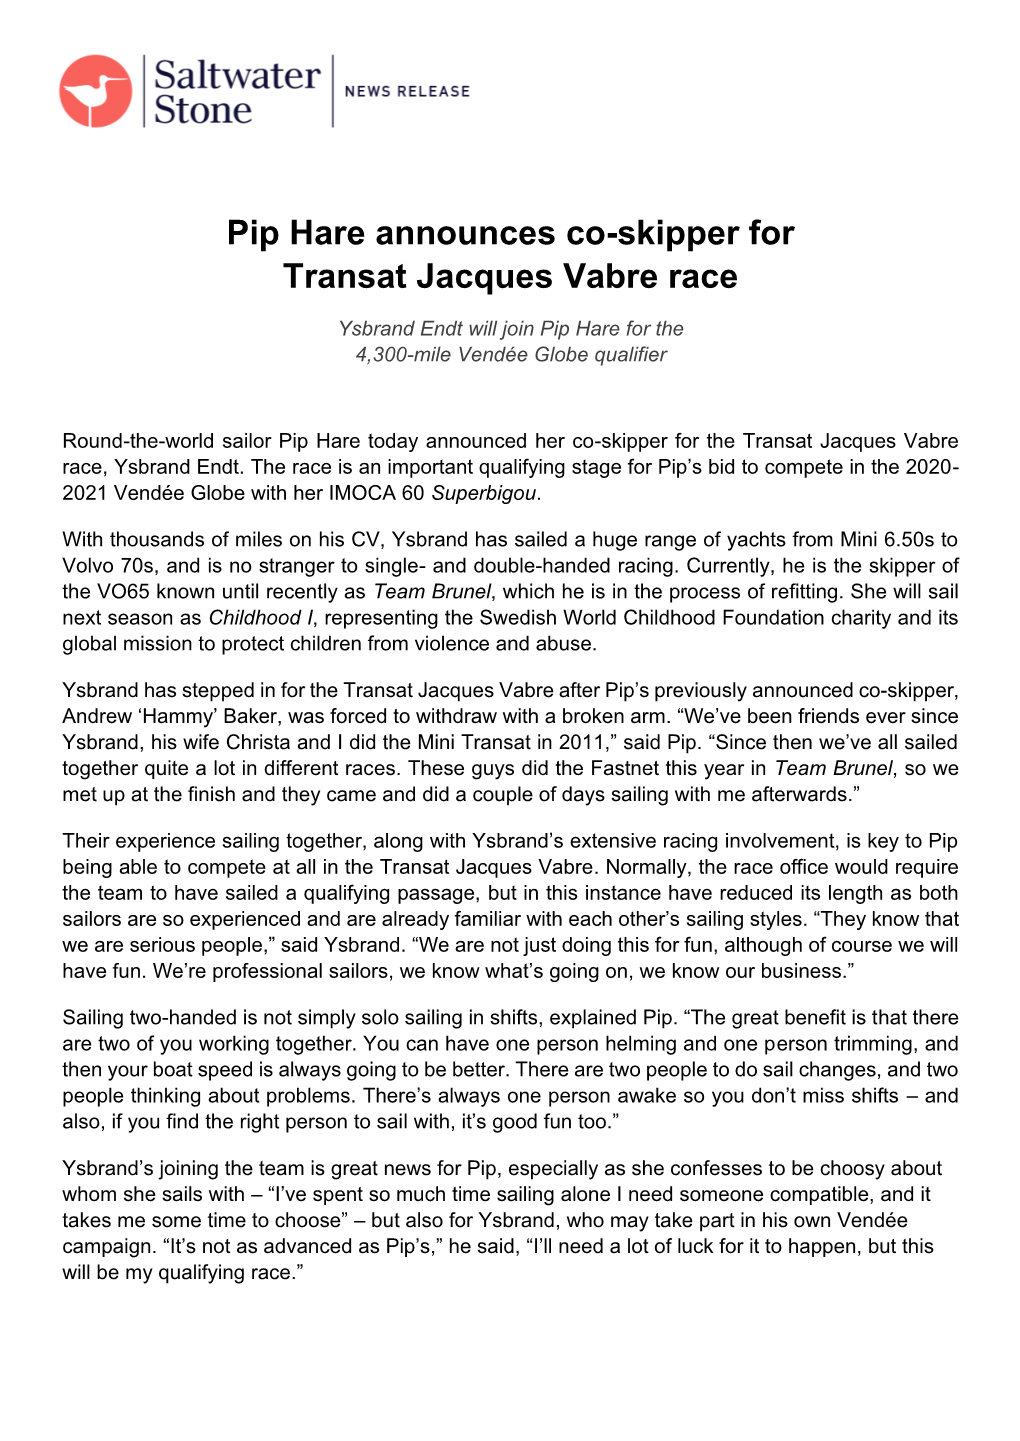 Pip Hare Announces Co-Skipper for Transat Jacques Vabre Race